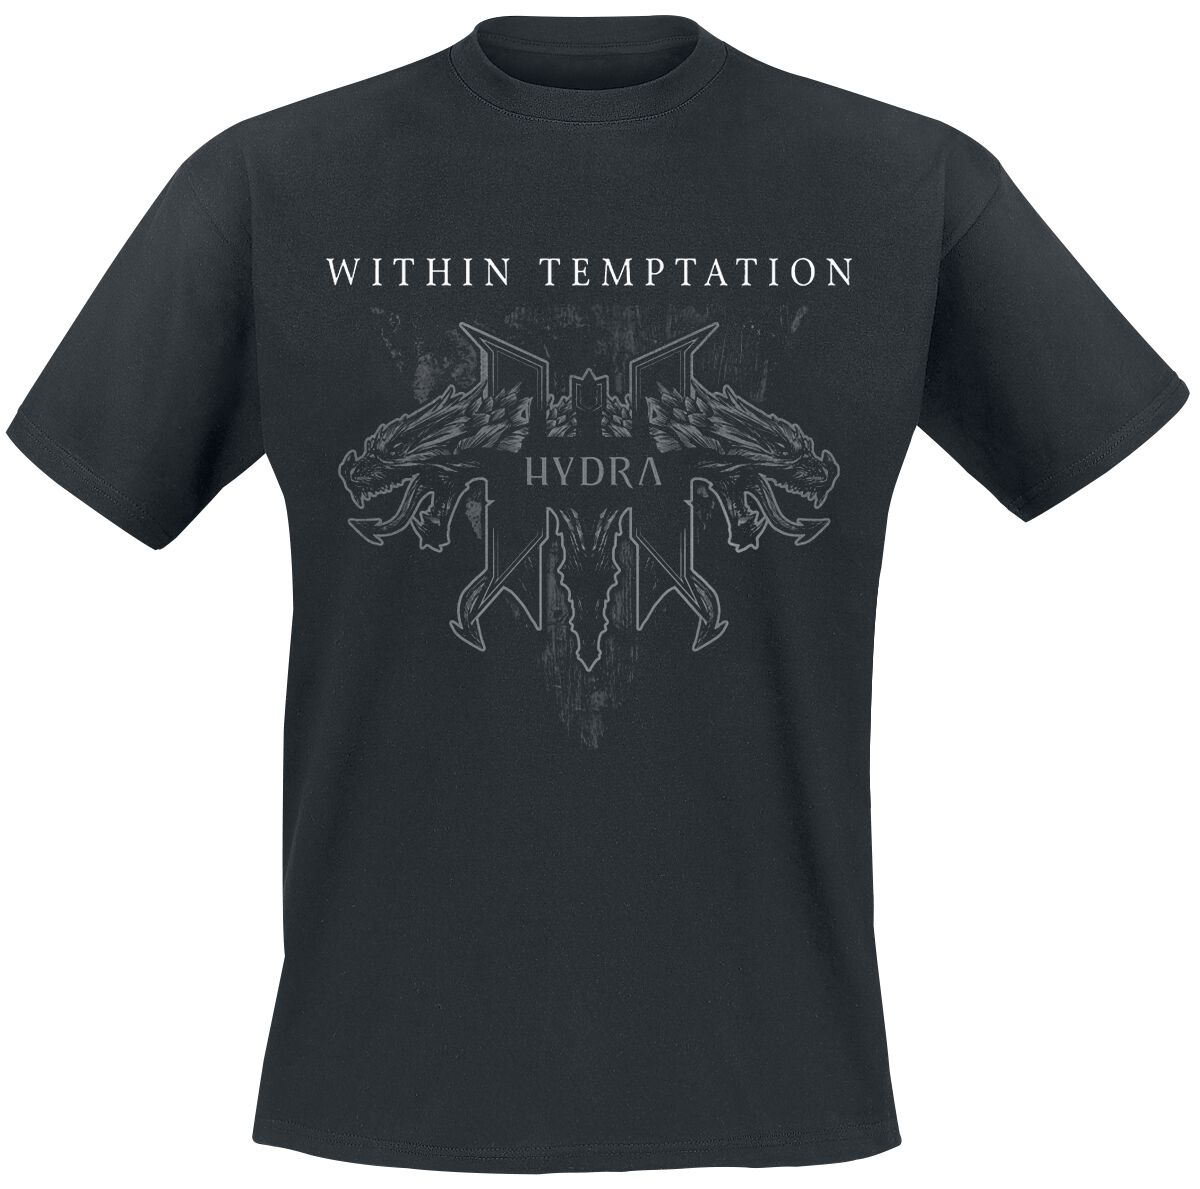 Within Temptation T-Shirt - Hydra Tracks - S bis XXL - für Männer - Größe S - schwarz  - Lizenziertes Merchandise!